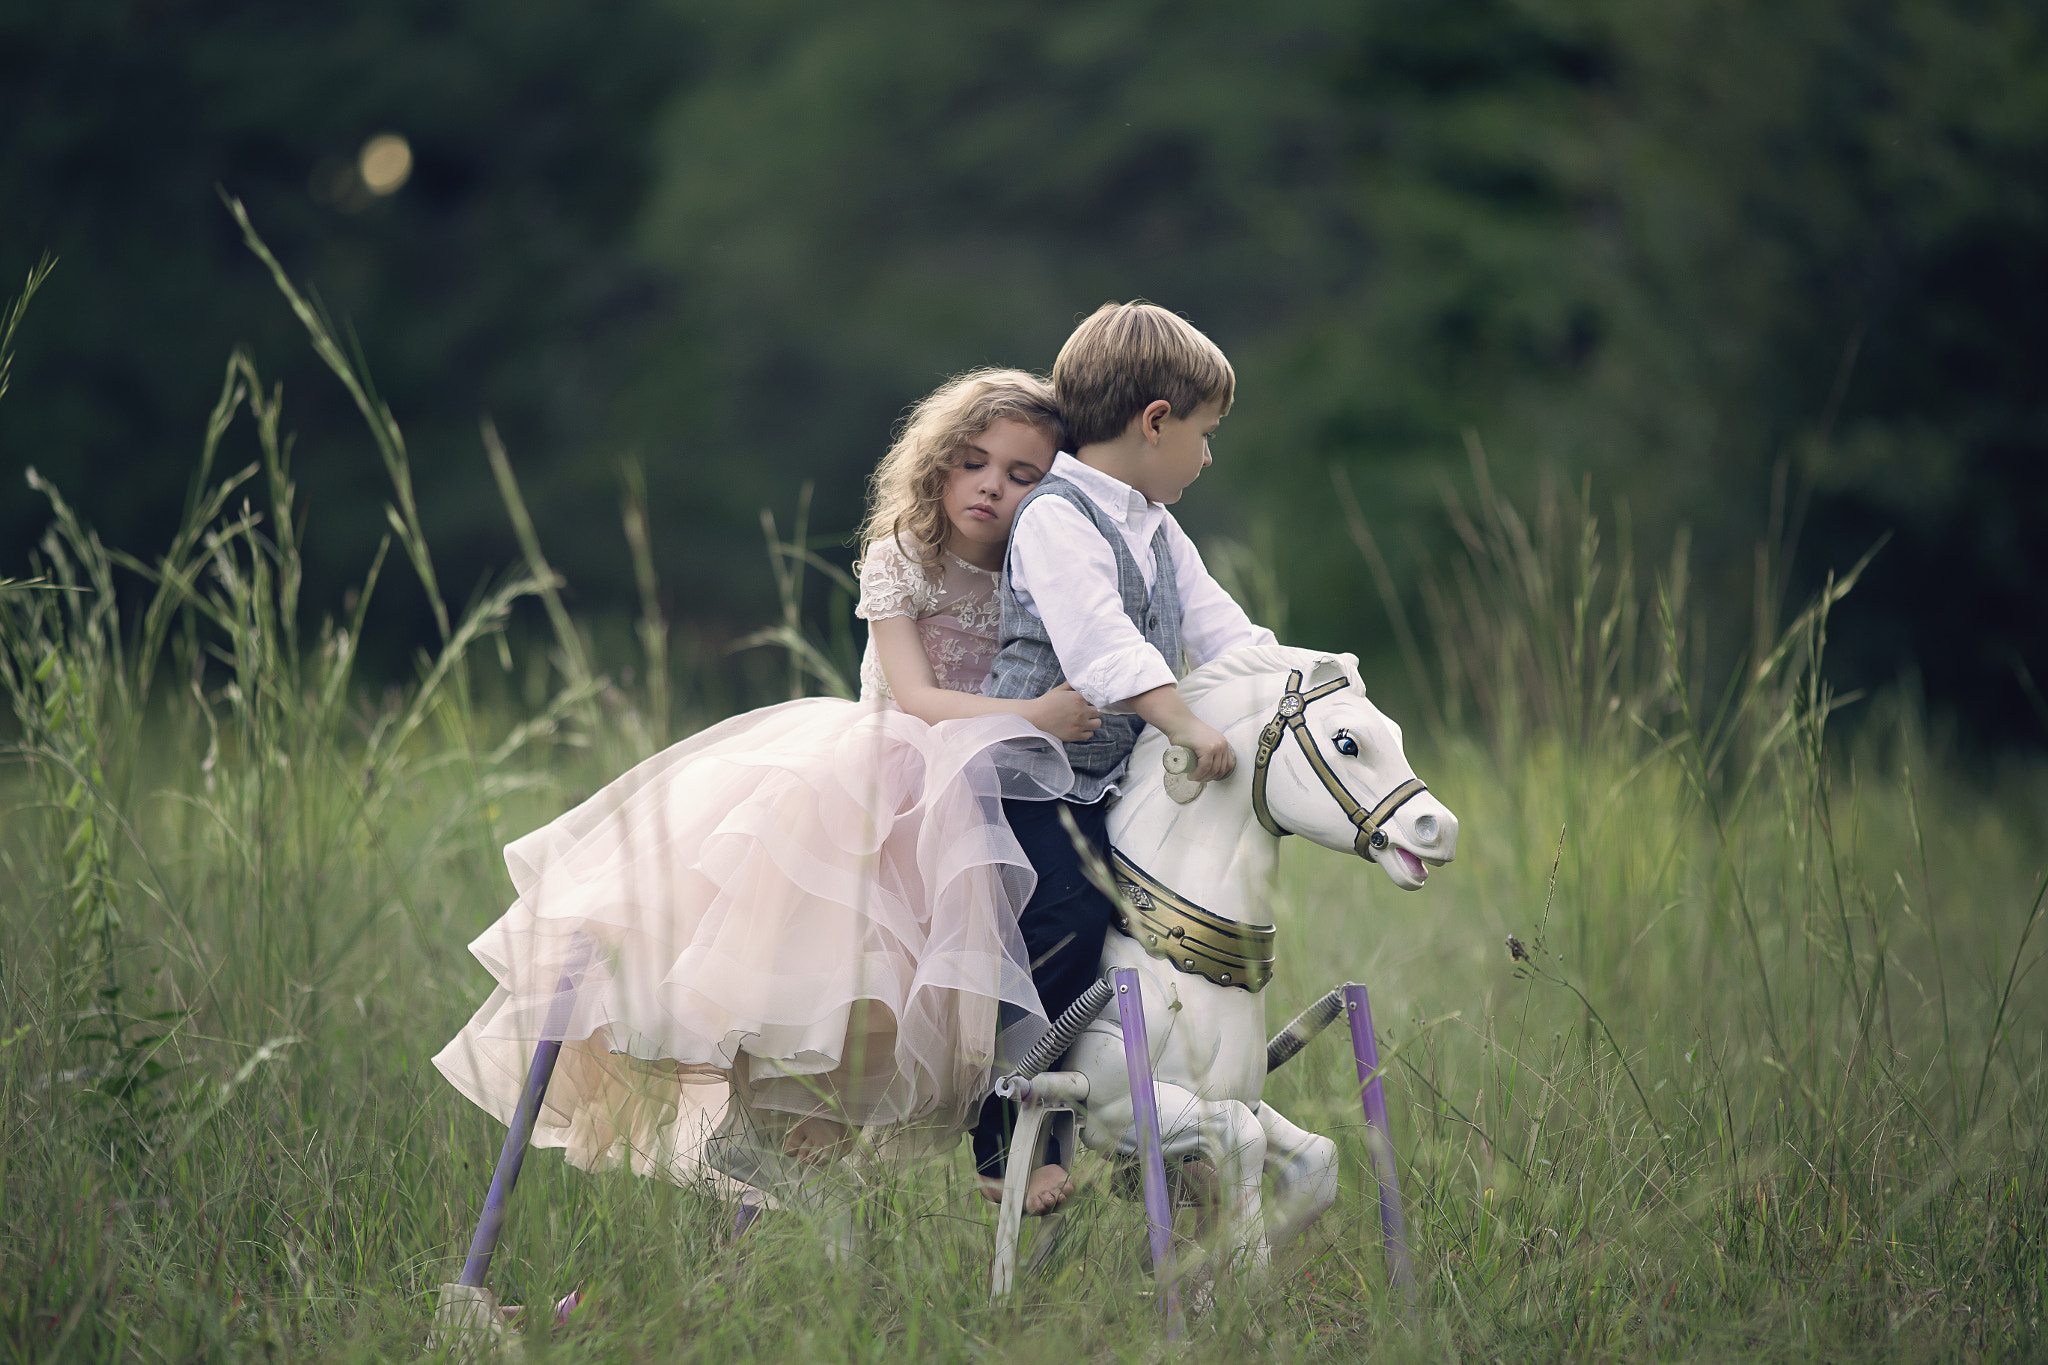 Canon EOS 6D sample photo. Cinderella & prince charming photography